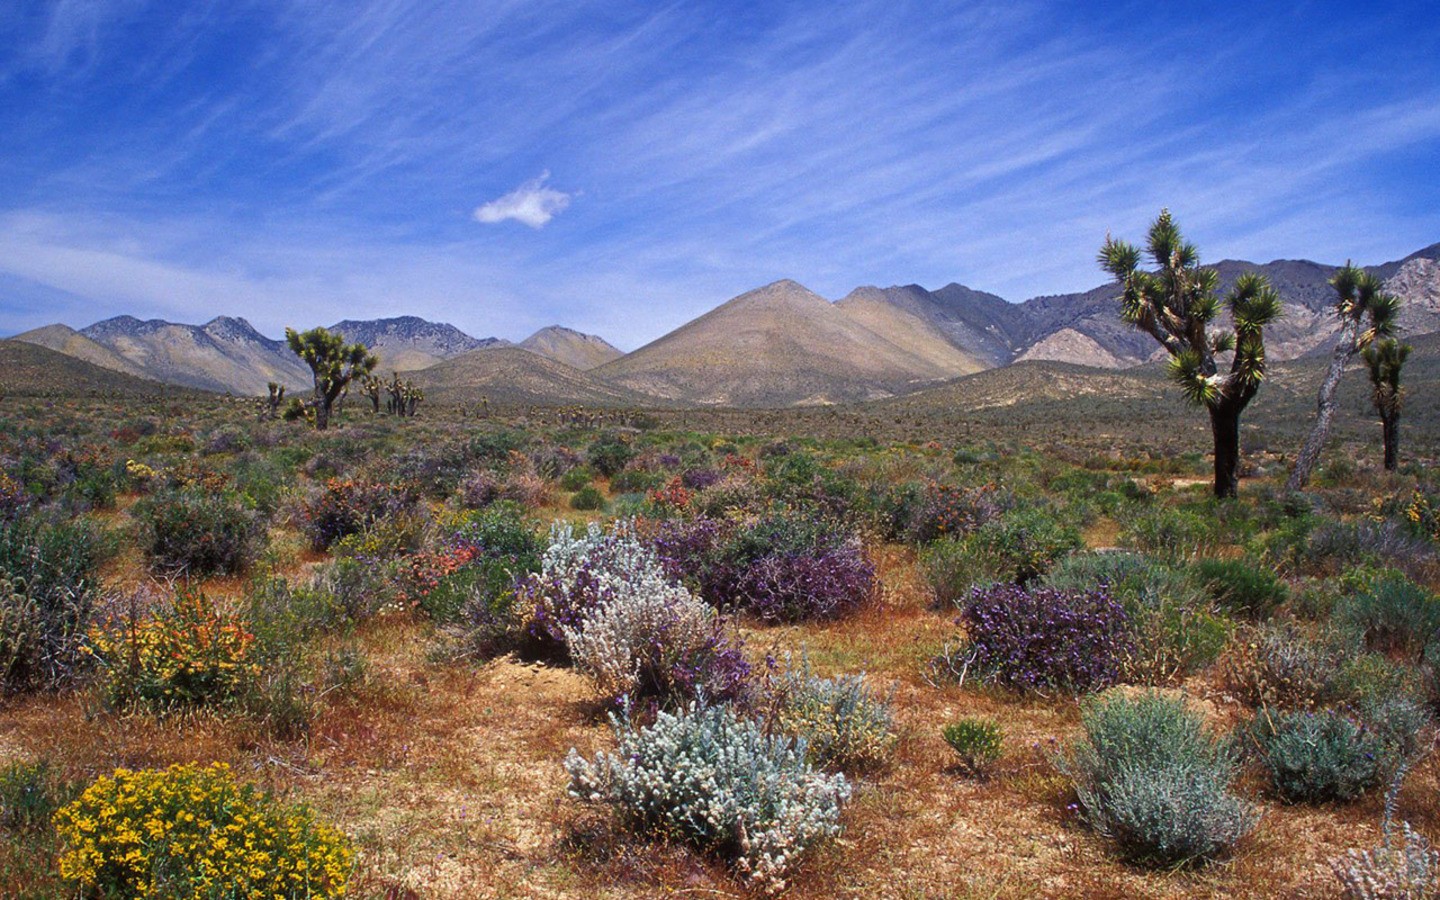 General 1440x900 desert landscape sky nature plants mountains